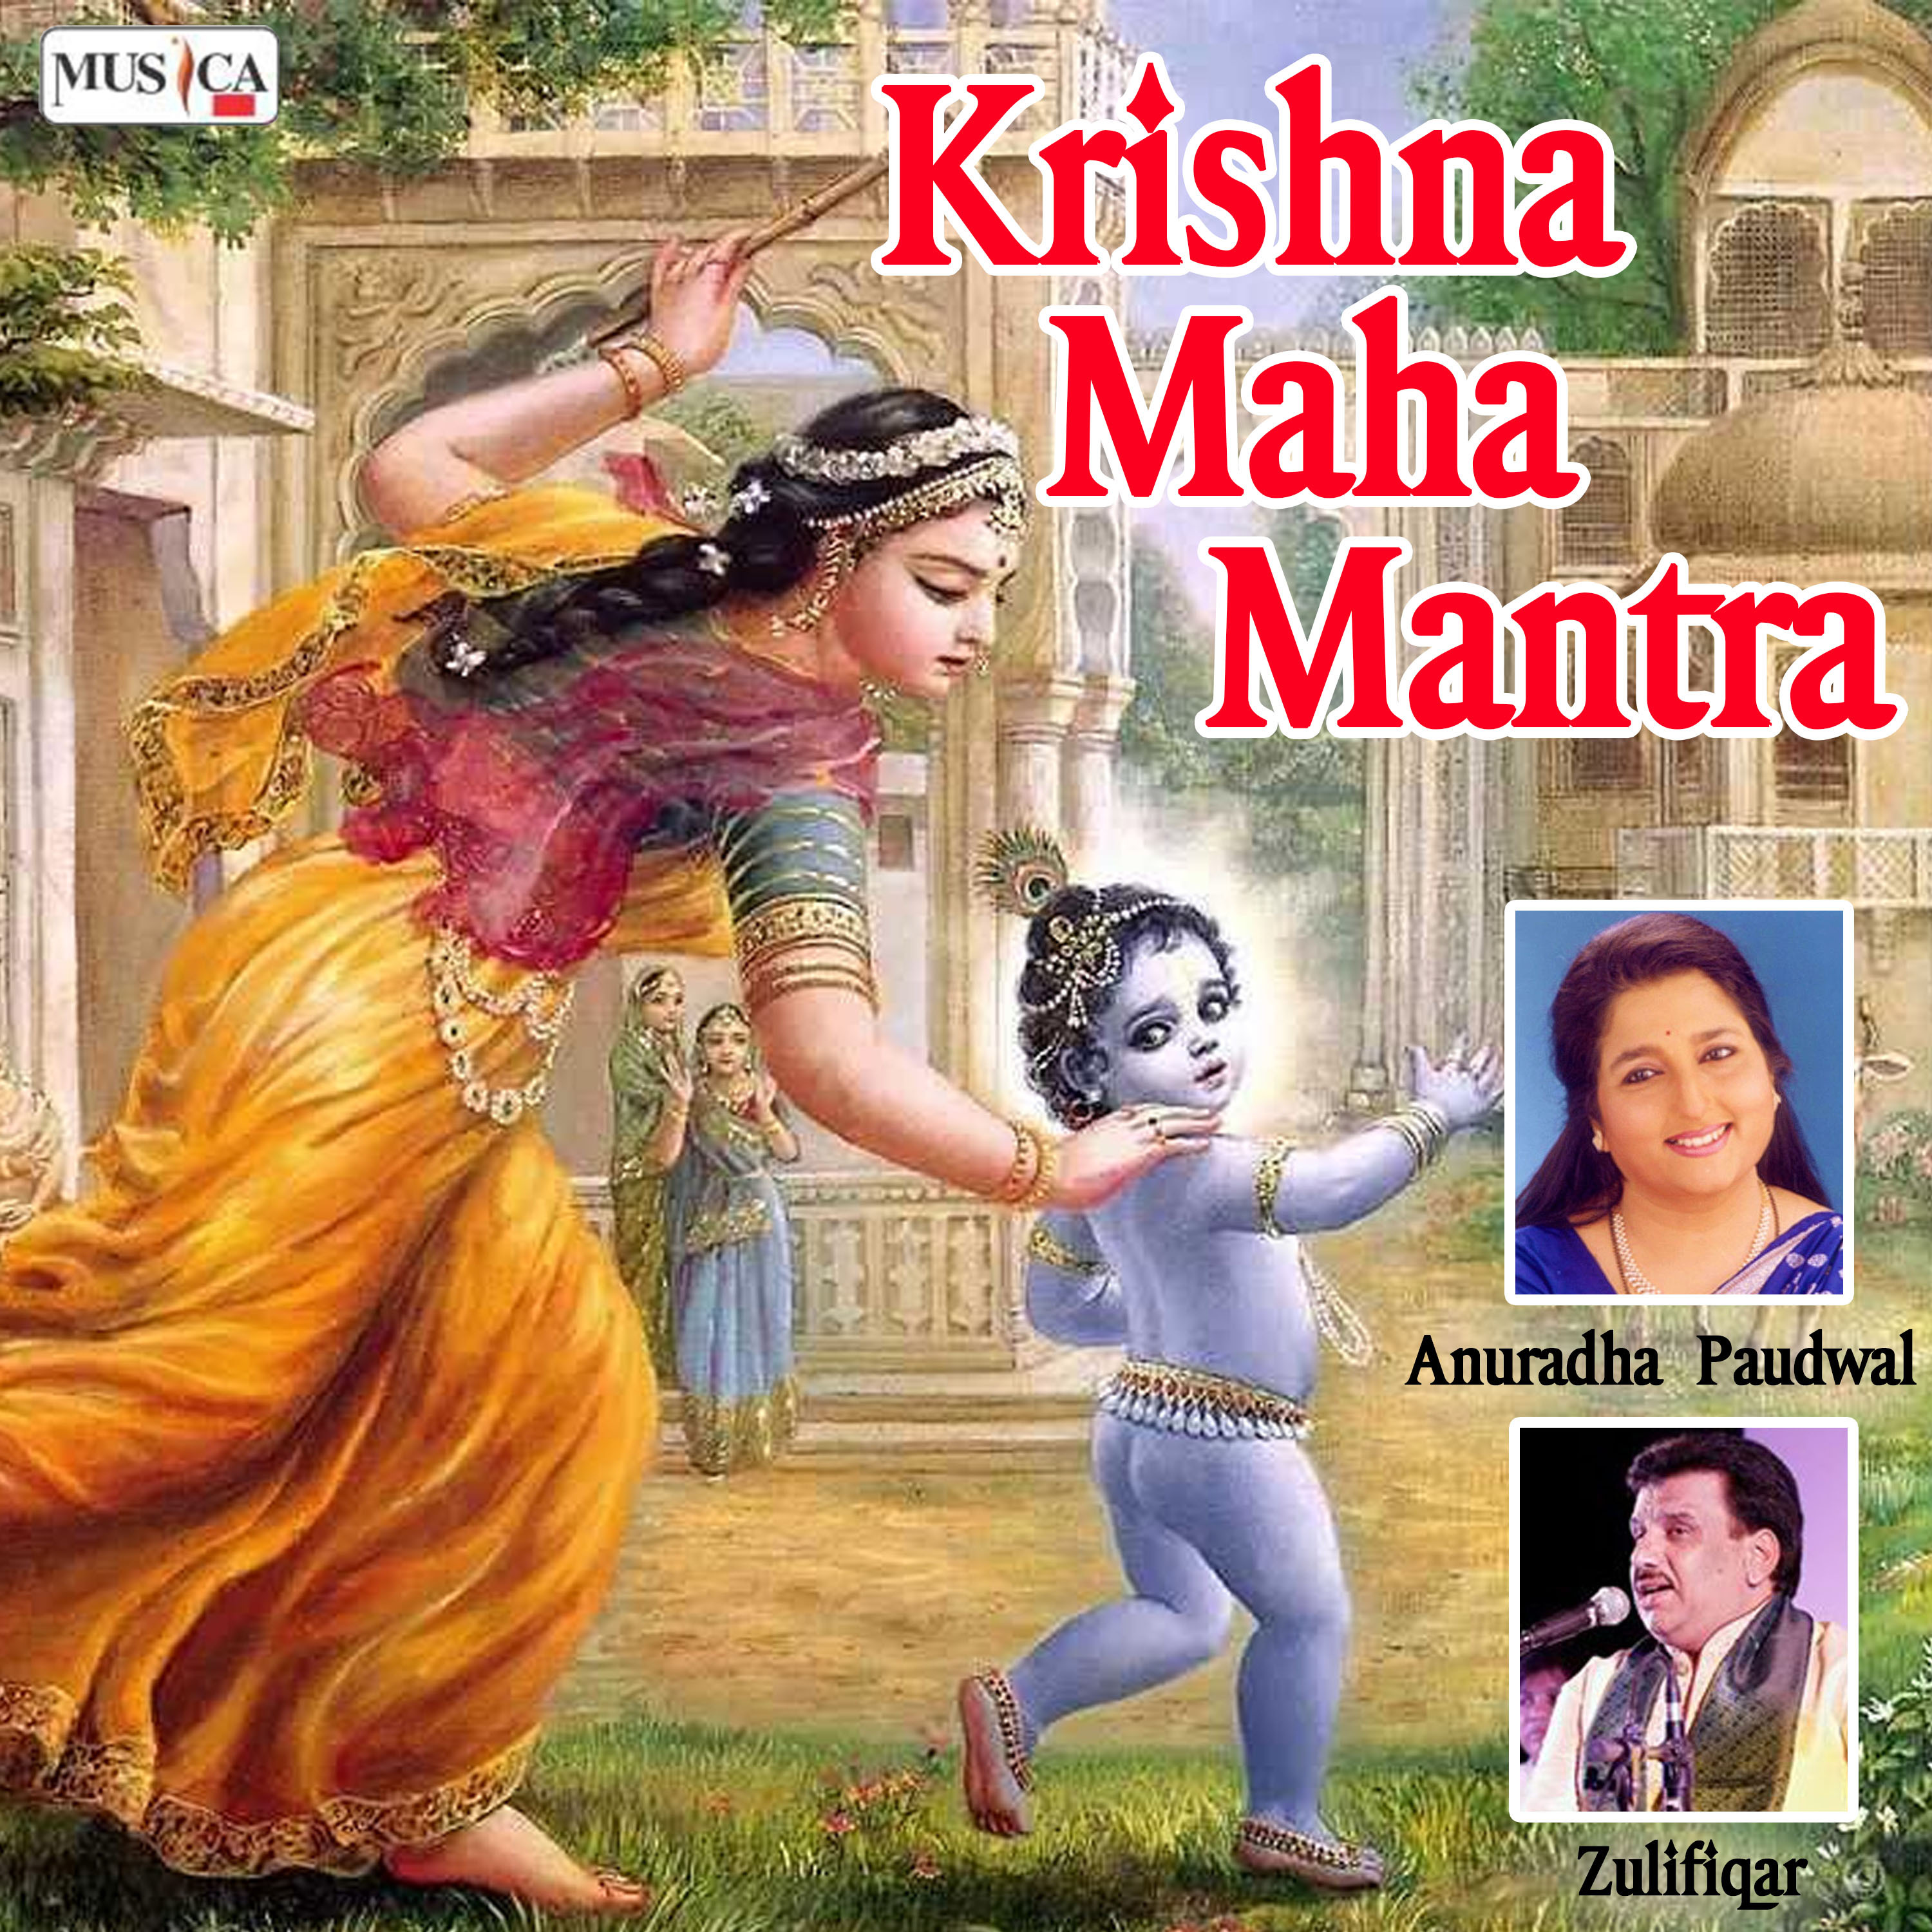 Krishna Maha Mantra